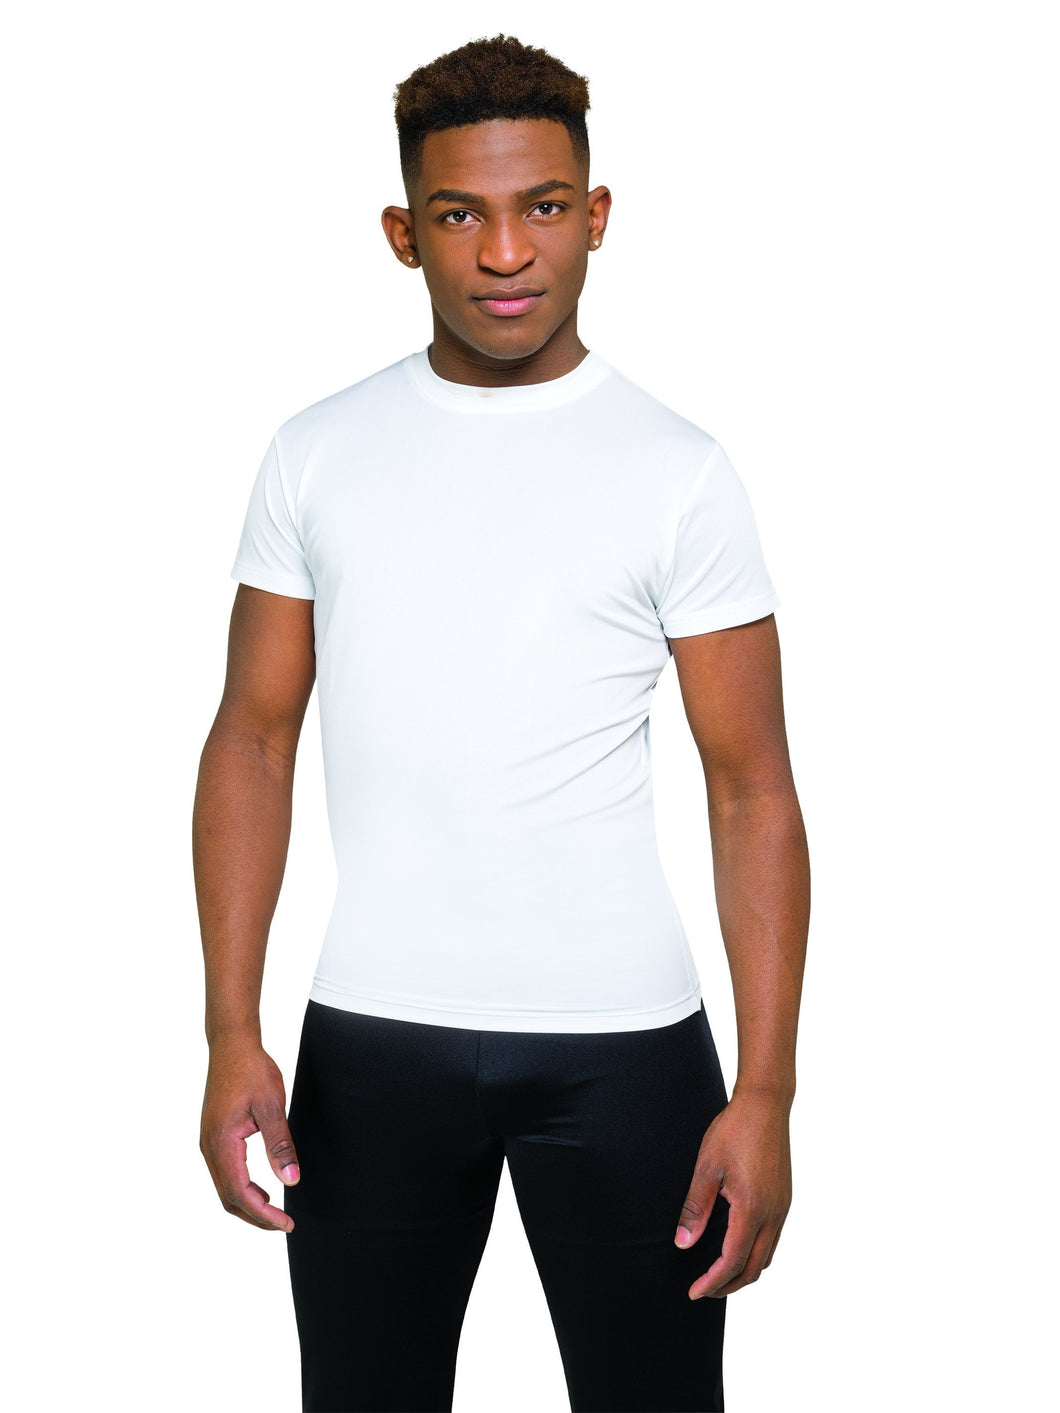 CE Cool Short Sleve Compression Shirt - Black Only